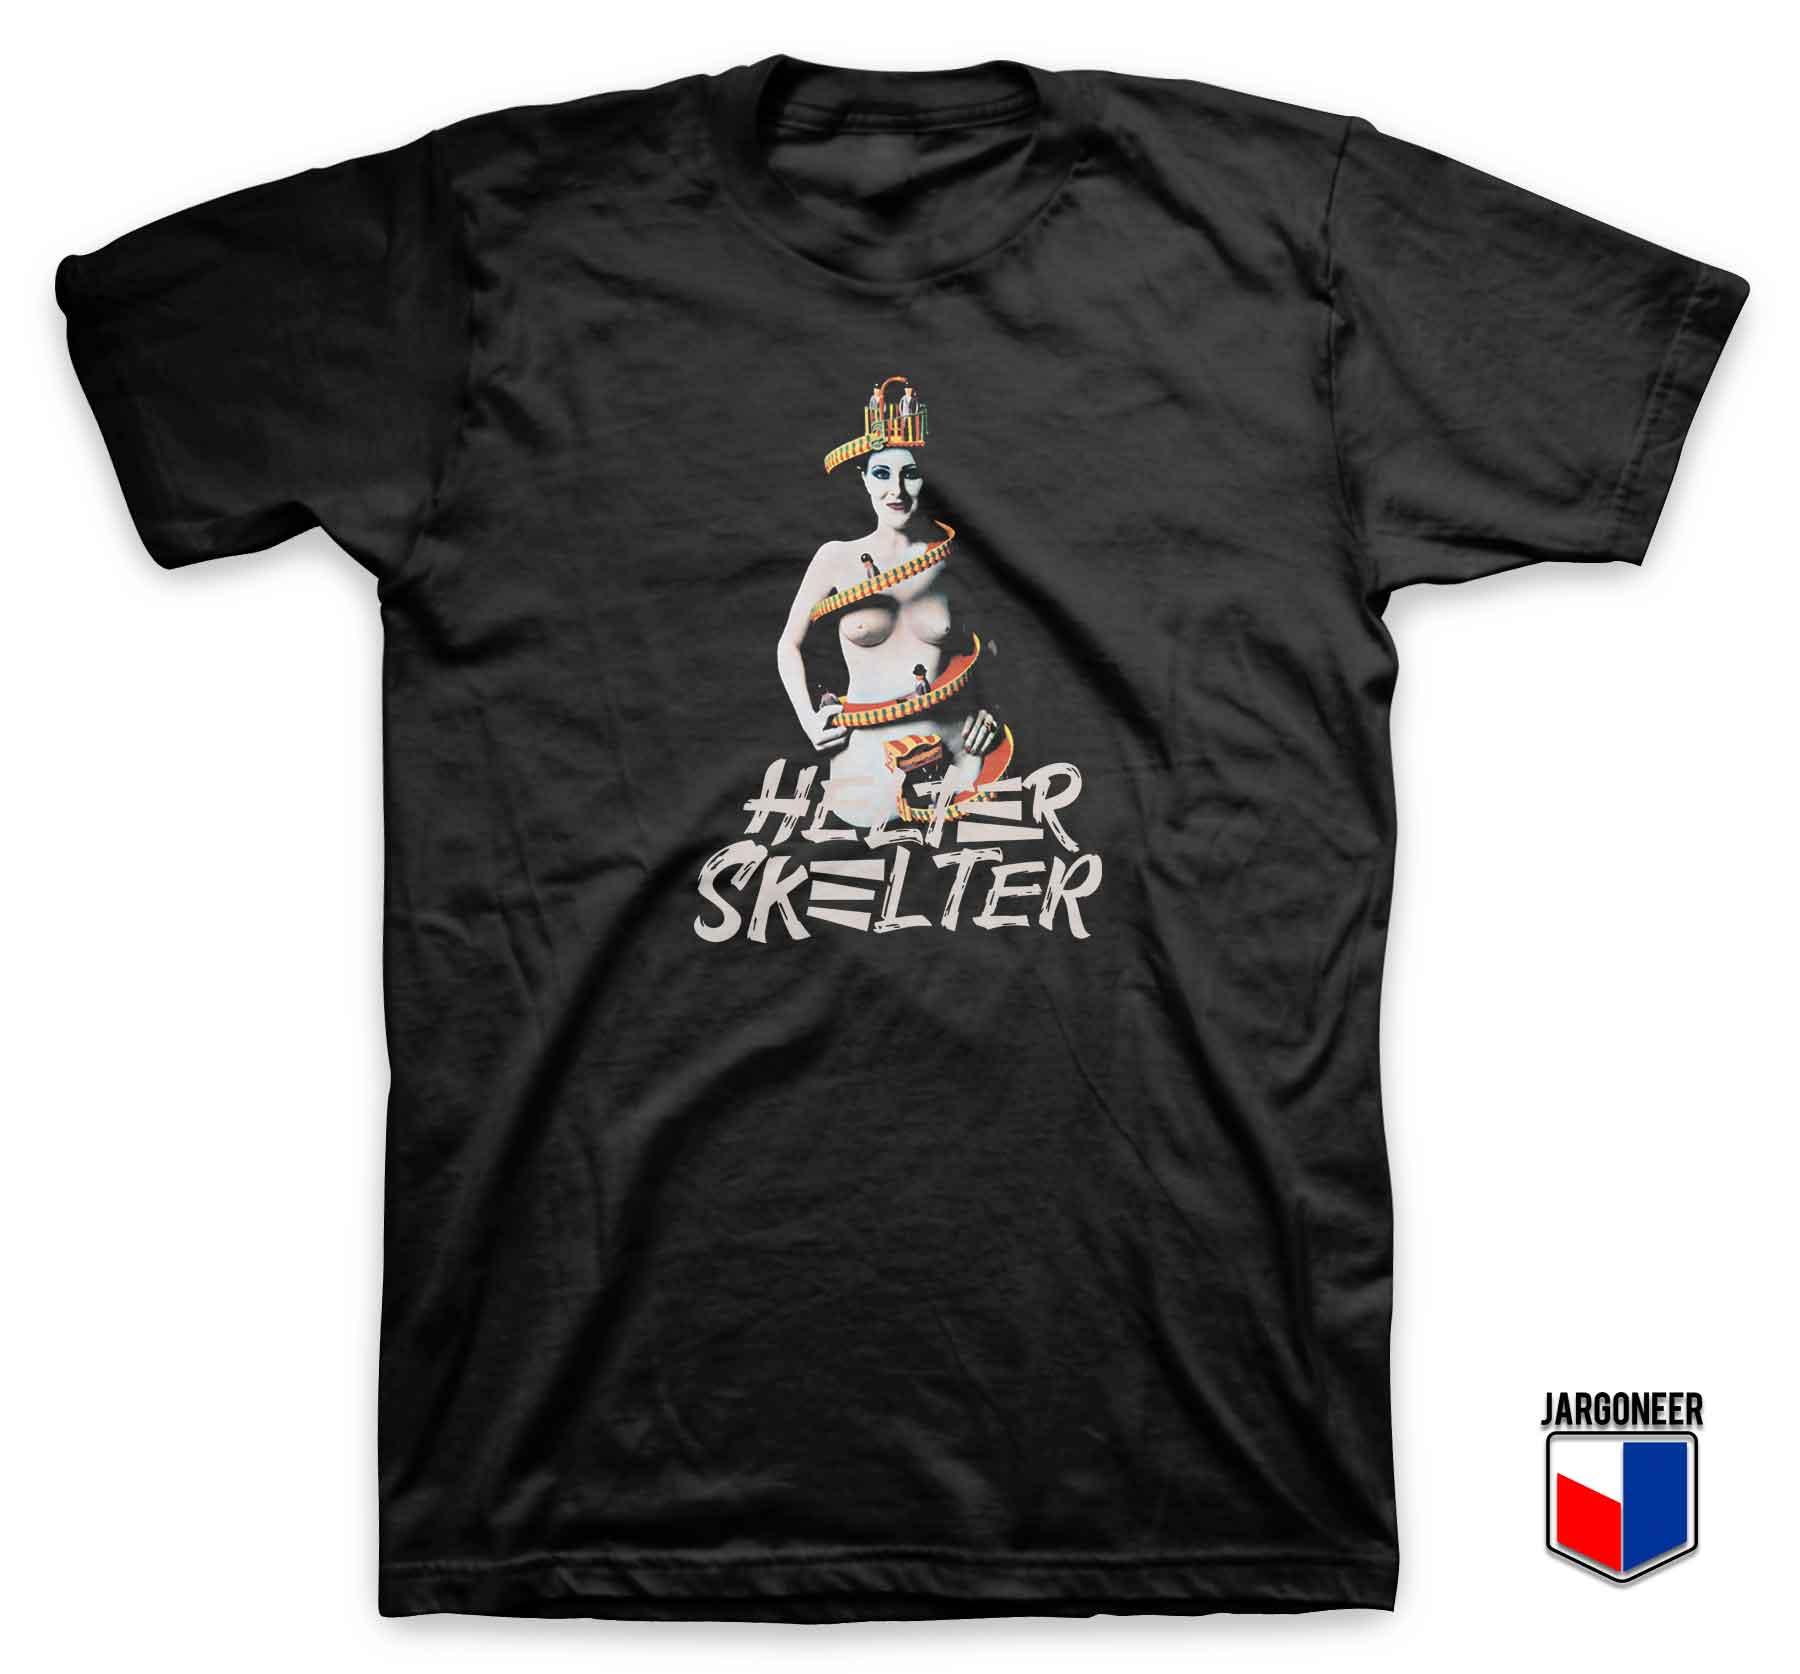 Helter Skelter 3 - Shop Unique Graphic Cool Shirt Designs